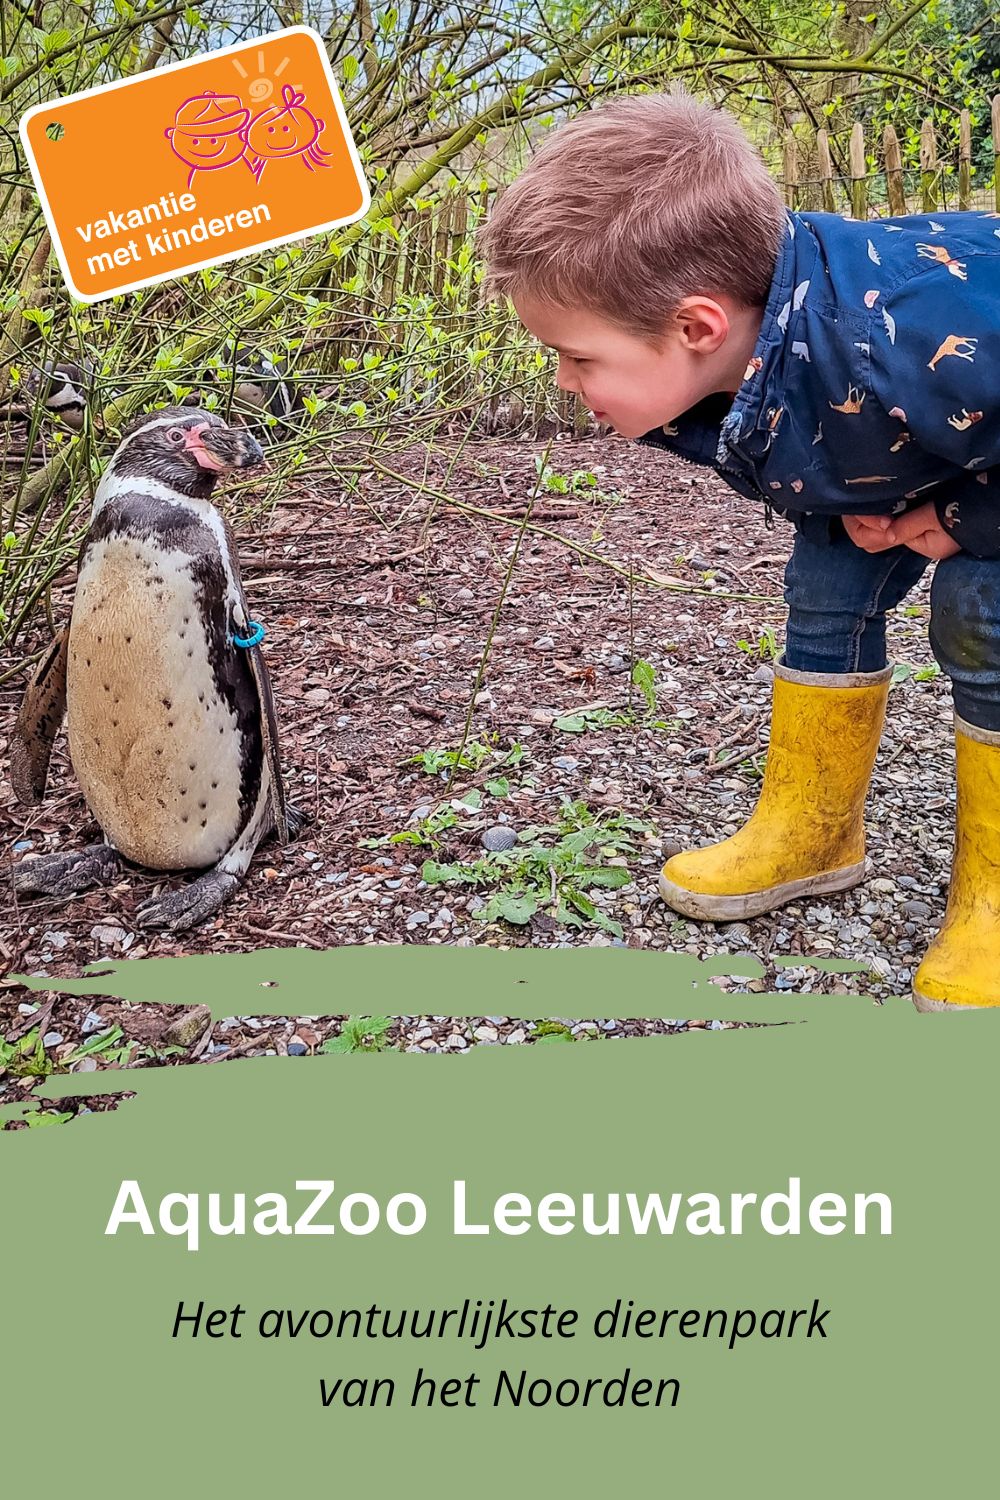 Bewaar deze pin over AquaZoo Leeuwarden op Pinterest